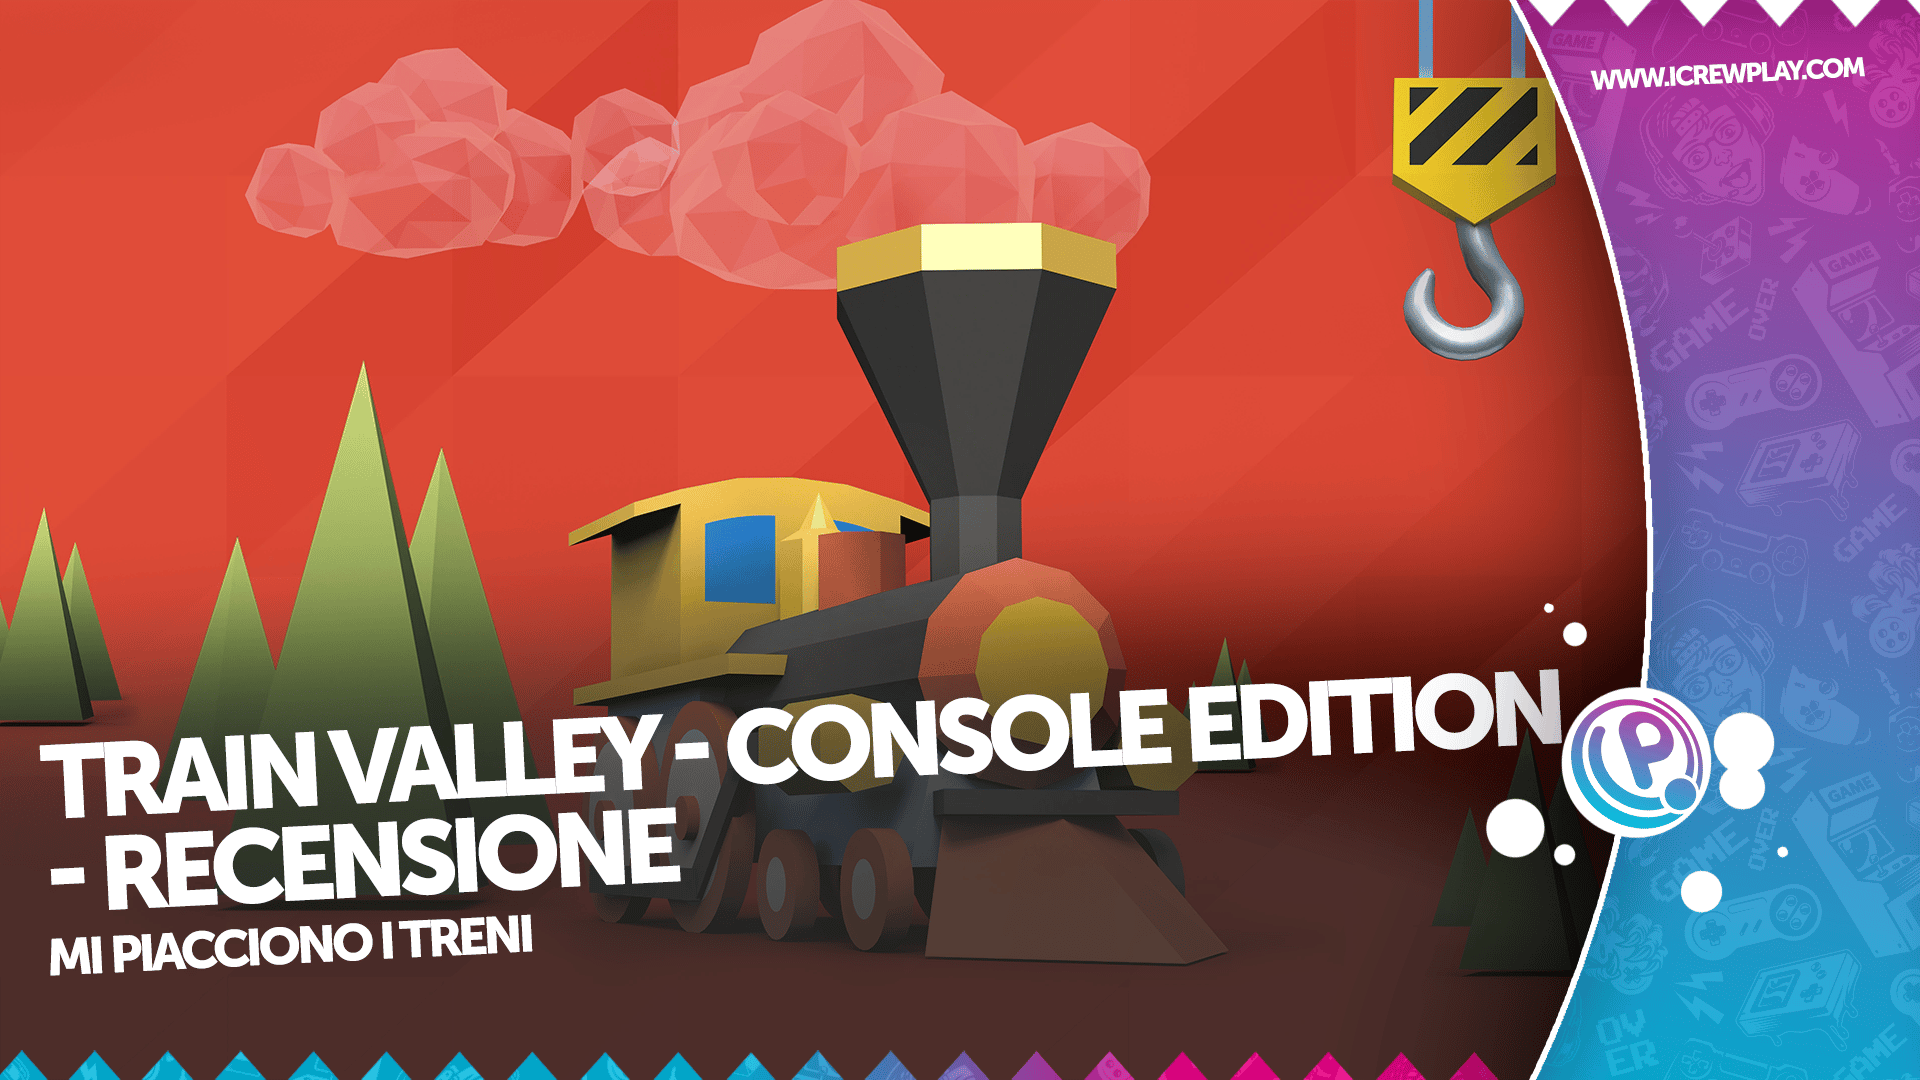 Train Valley: Console Edition - Recensione per Nintendo Switch 6